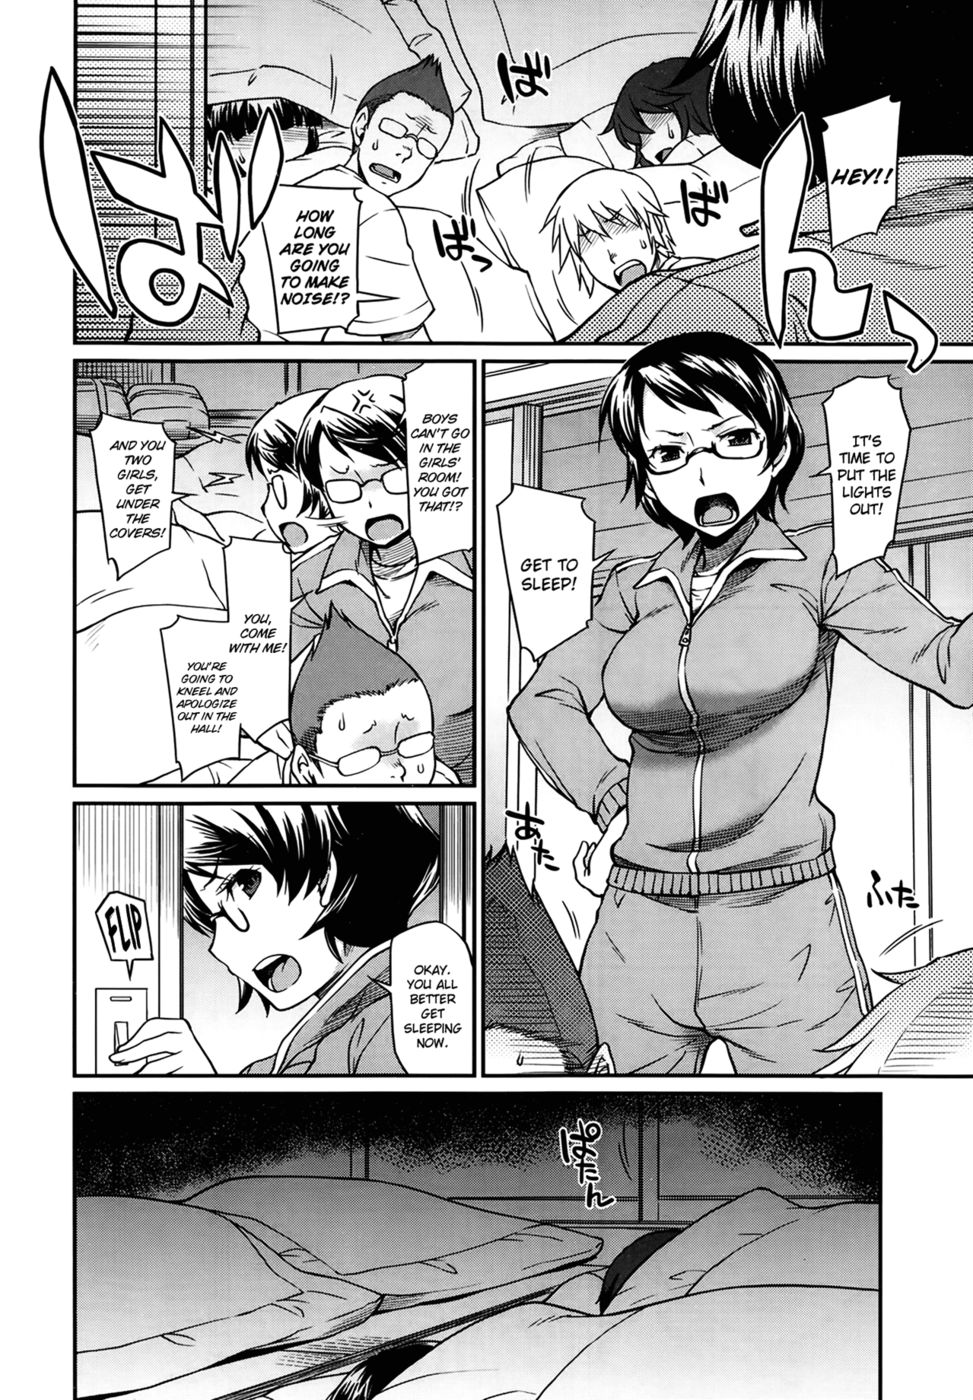 Hentai Manga Comic-Inside the Futon-Read-2